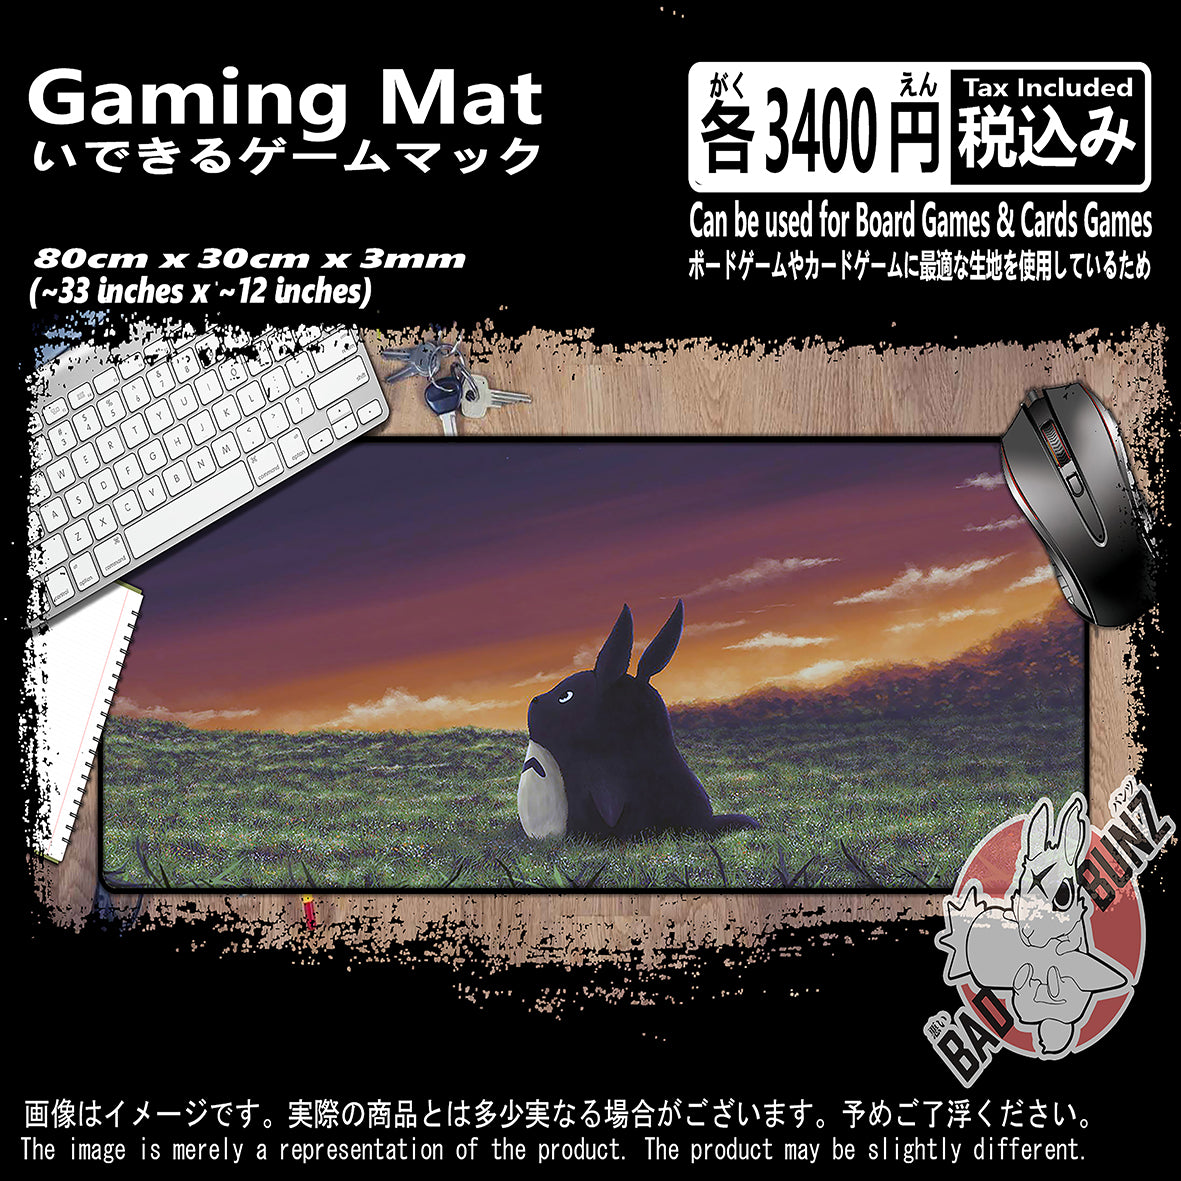 (AN-TTR-02) Studio Ghibli Anime 800mm x 300mm Gaming Play Mat